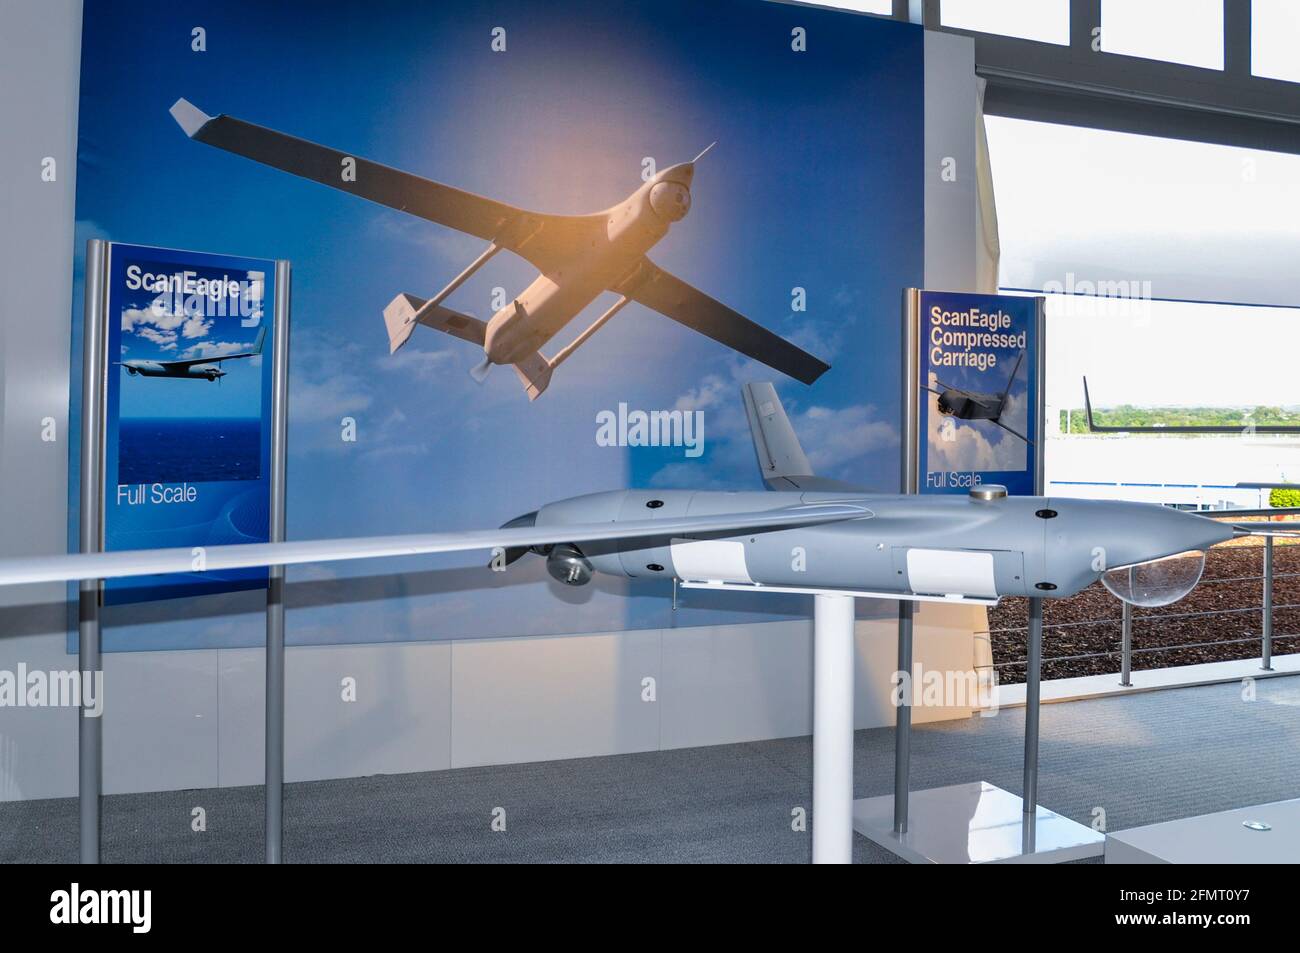 Boeing ScanEagle UAV au salon de l'aéronautique international de Farnborough 2010, Royaume-Uni. Boeing petit véhicule aérien sans pilote de faible altitude ScanEagle (UAV) Insitu Banque D'Images